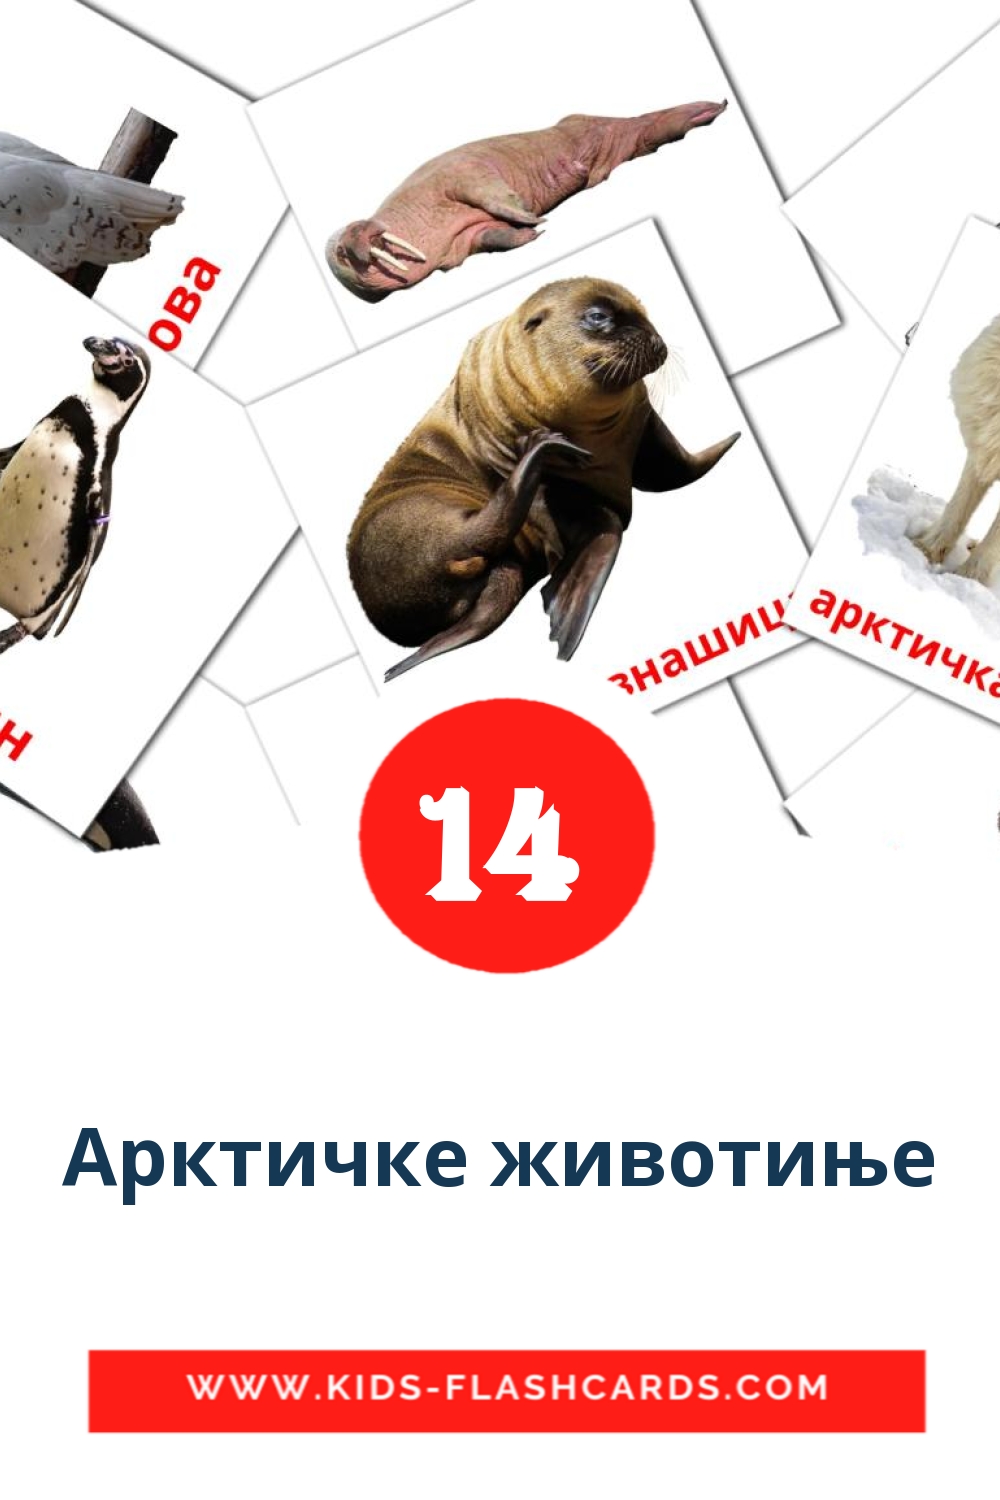 14 Арктичке животиње Bildkarten für den Kindergarten auf Serbisch(kyrillisch)